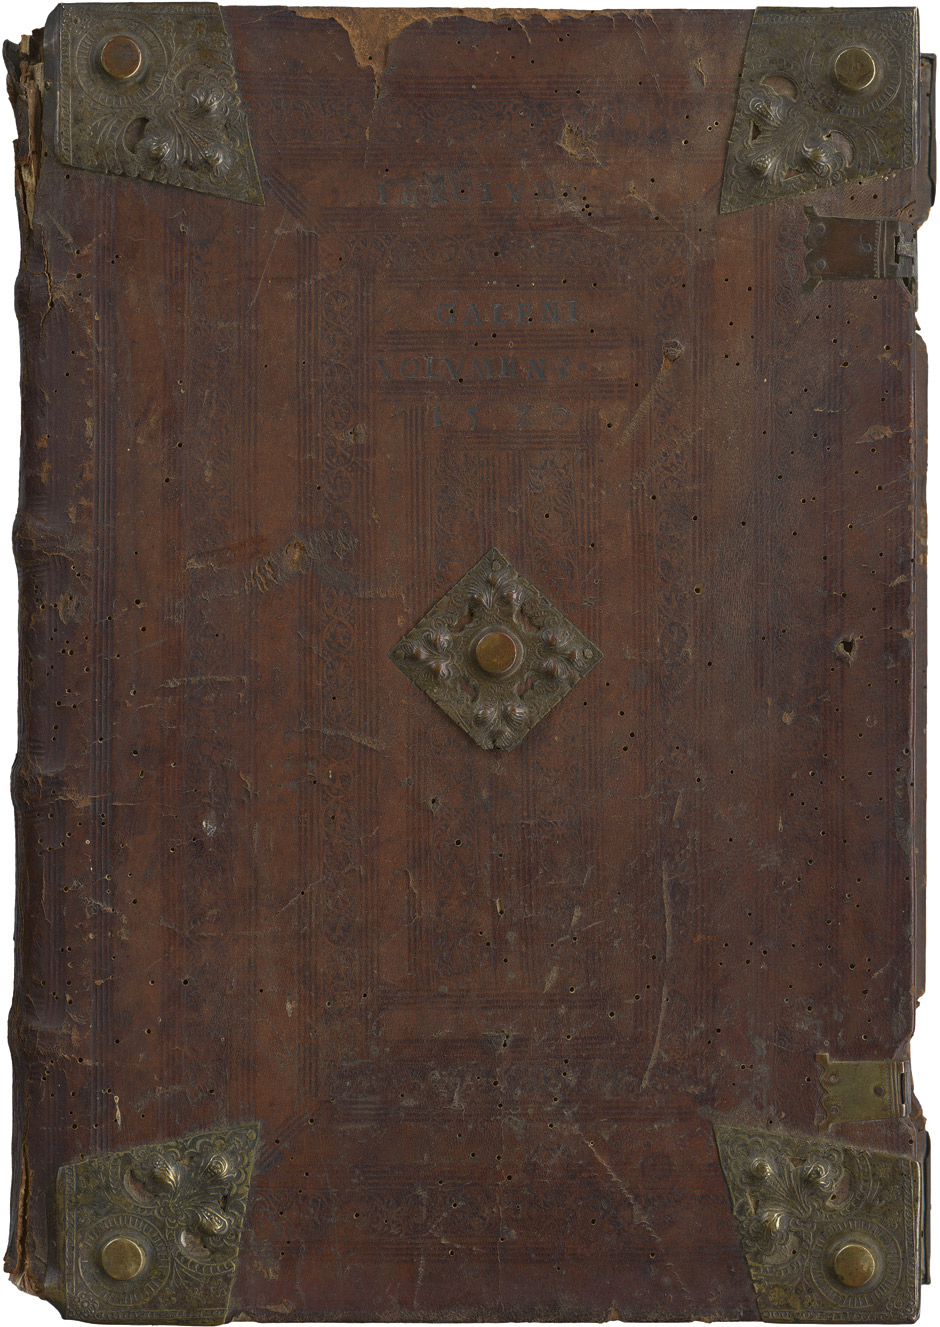 Lot 1112, Auction  115, Galenus, Claudius, Tertium Galeni volumen quarta impressio. Venedig, Jacobus Paucidrapensis de Burgofranco, 1516